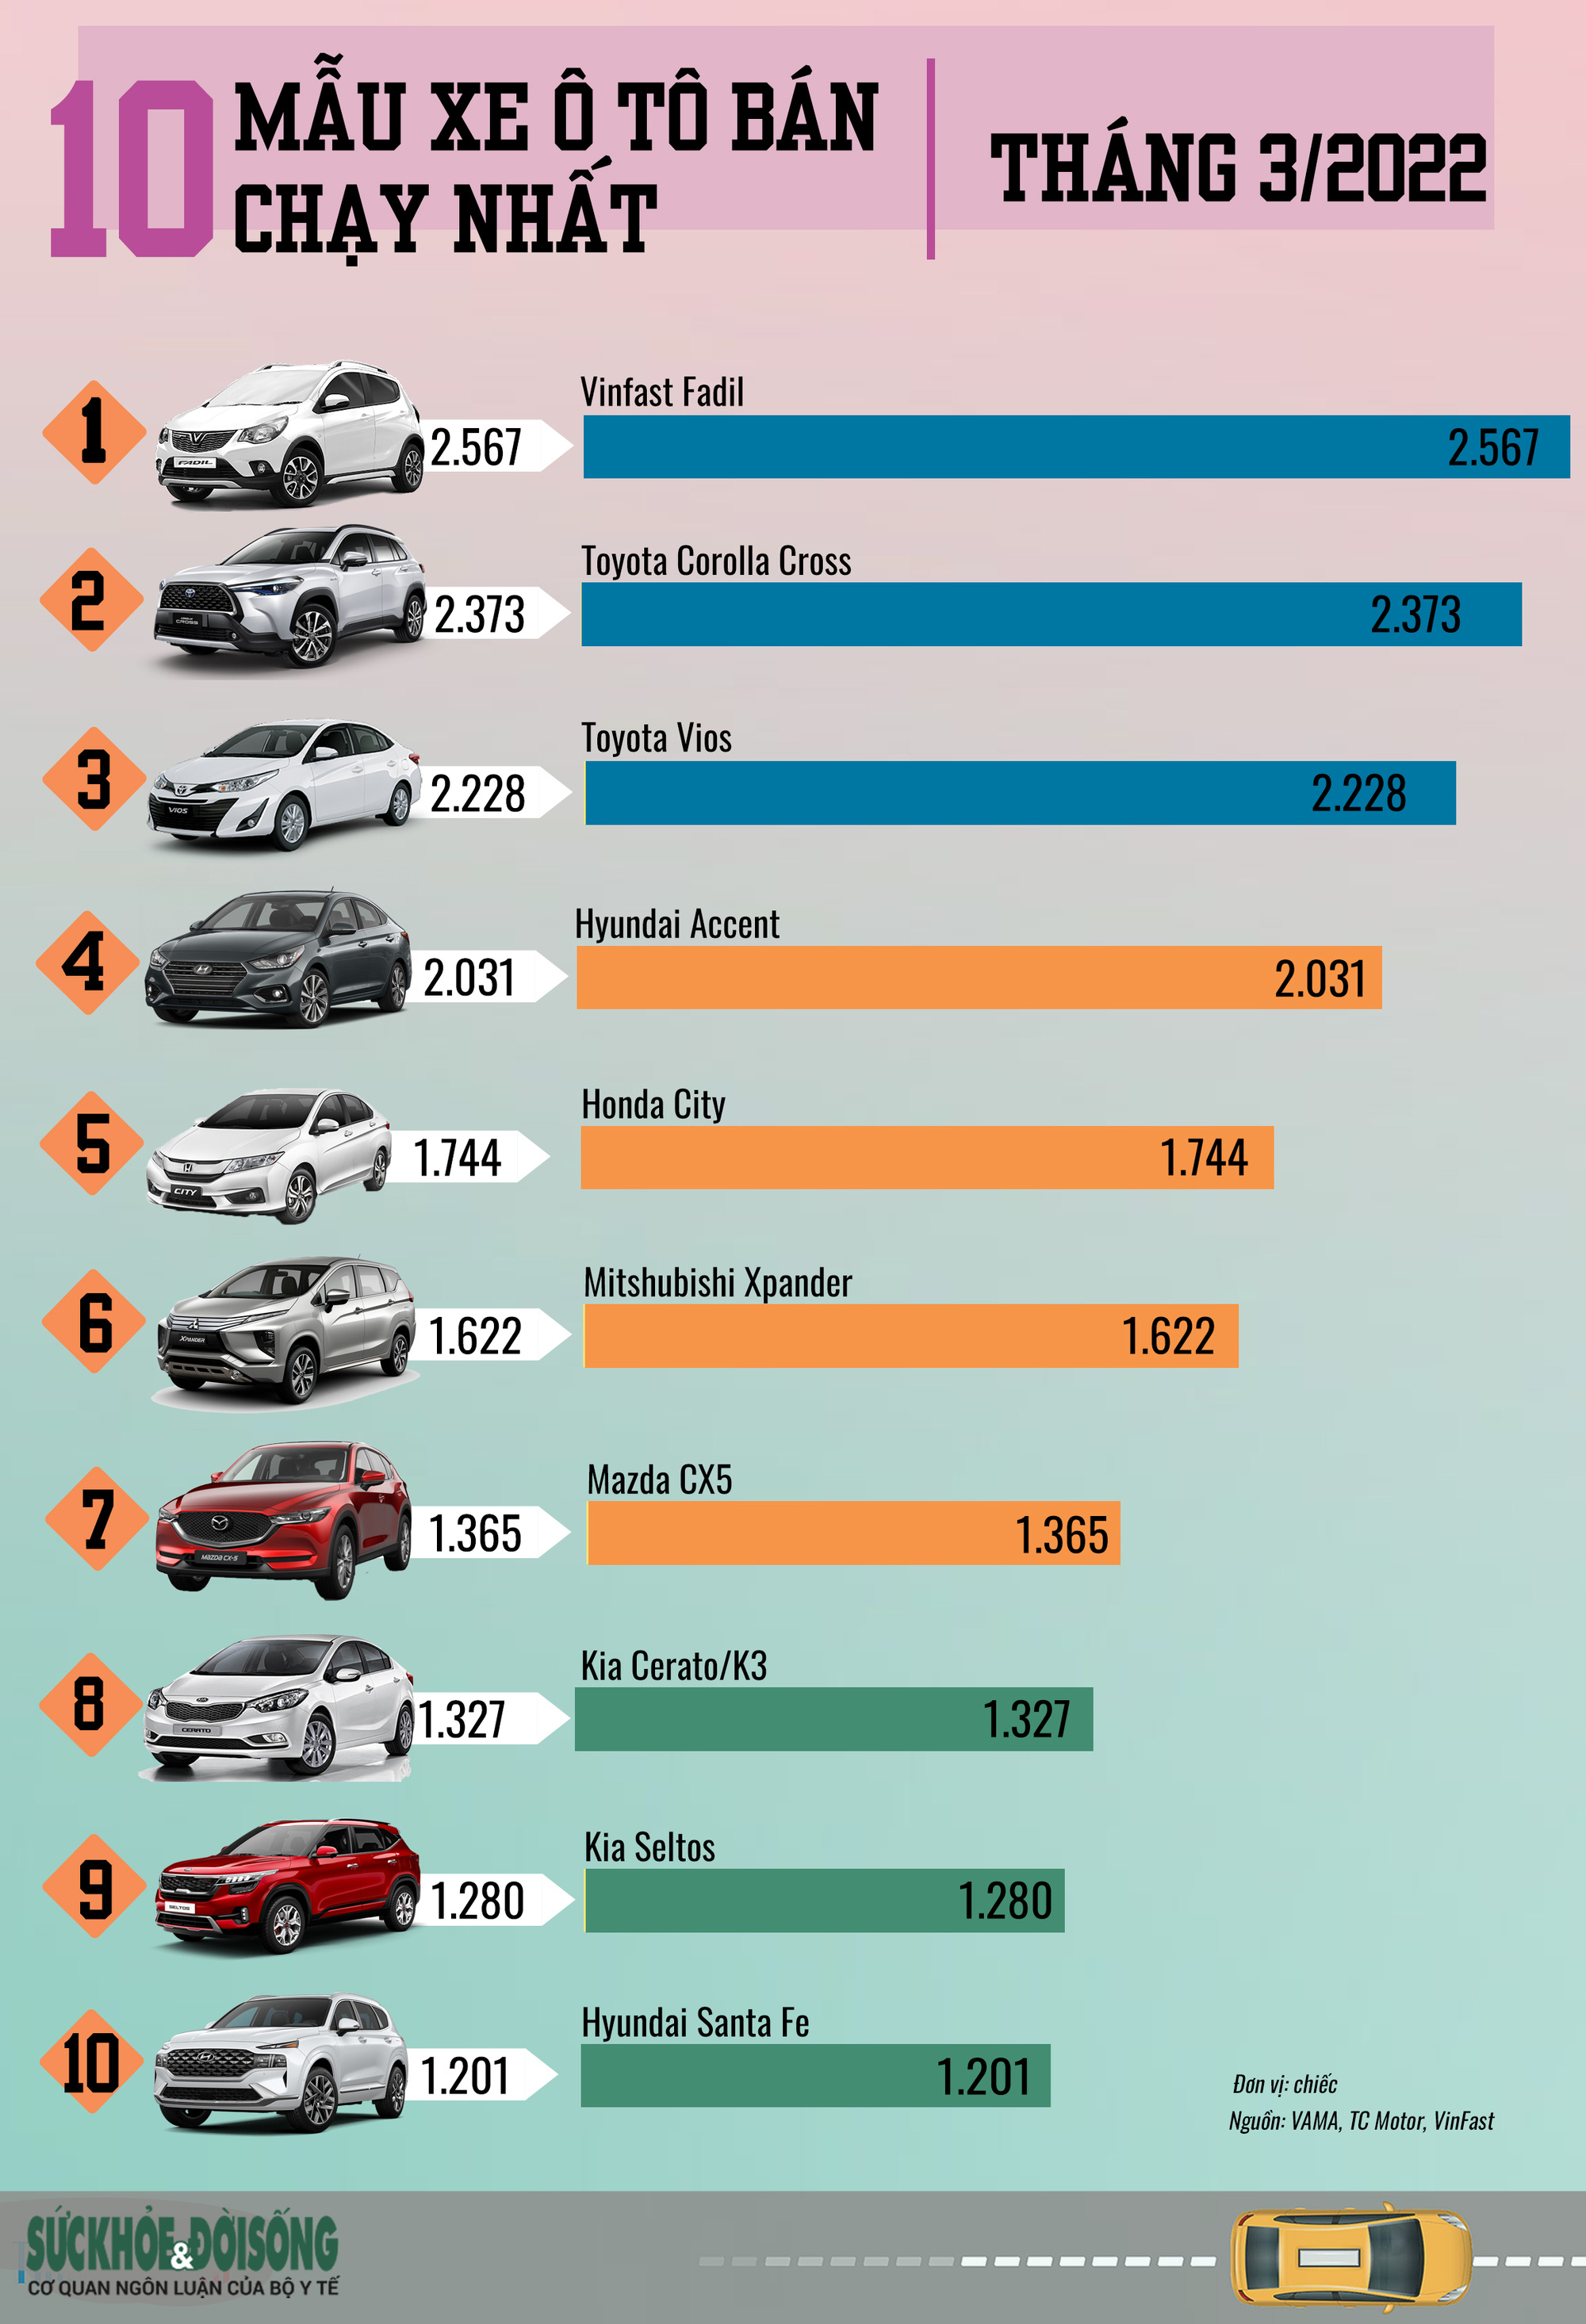 Infographic] - Top 10 Xe Ô Tô Bán Chạy Nhất Tháng 3/2022